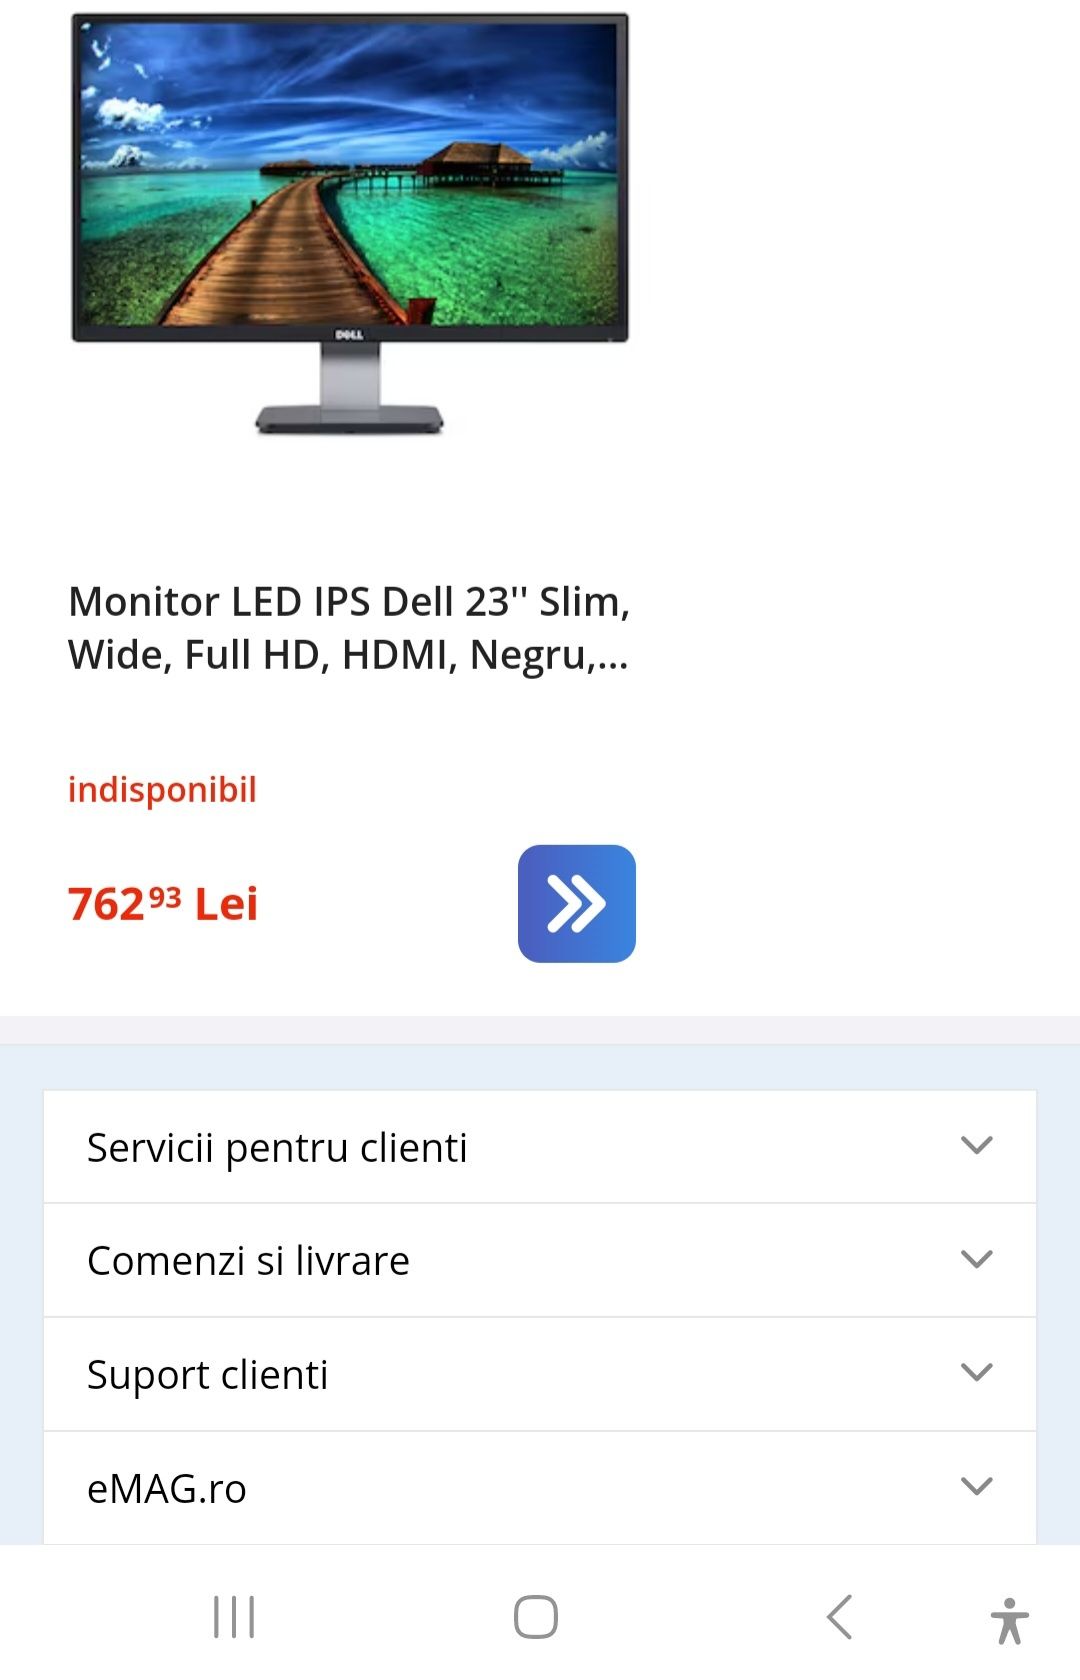 Monitor LED IPS Dell 23" Slim, Wide, Full HD
HDMI, Negru, S2340L
4.60